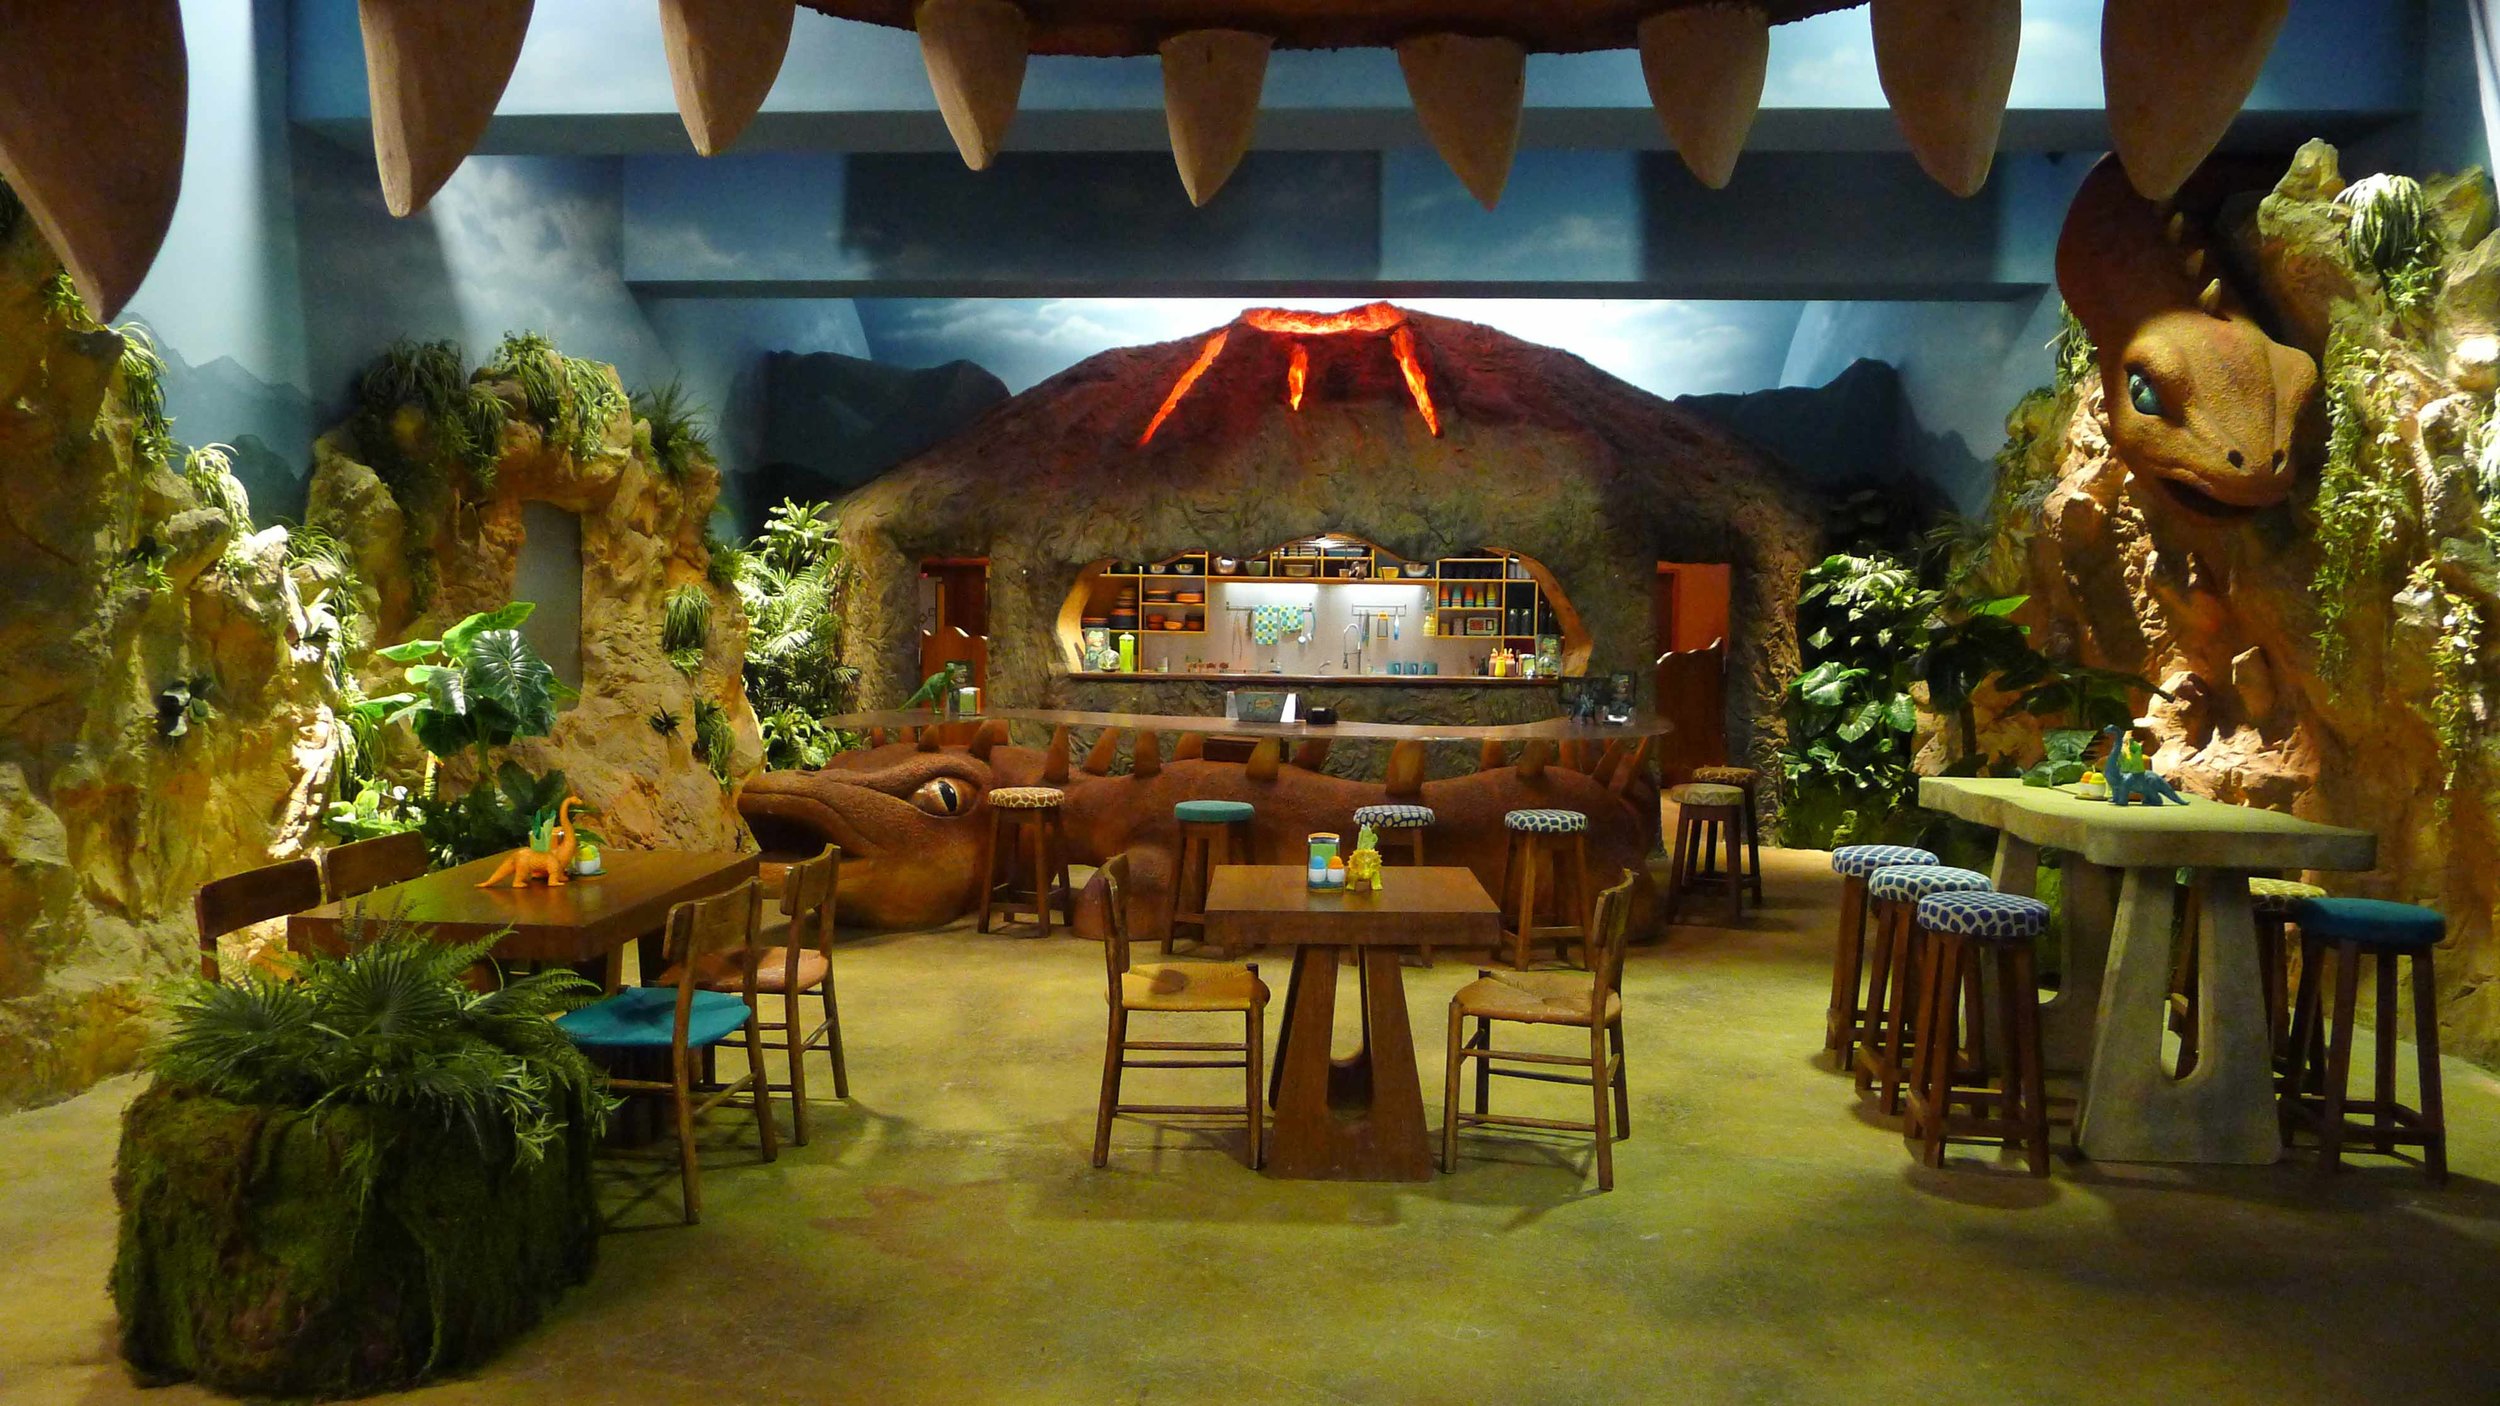  View of Dino Bite Cafe set 